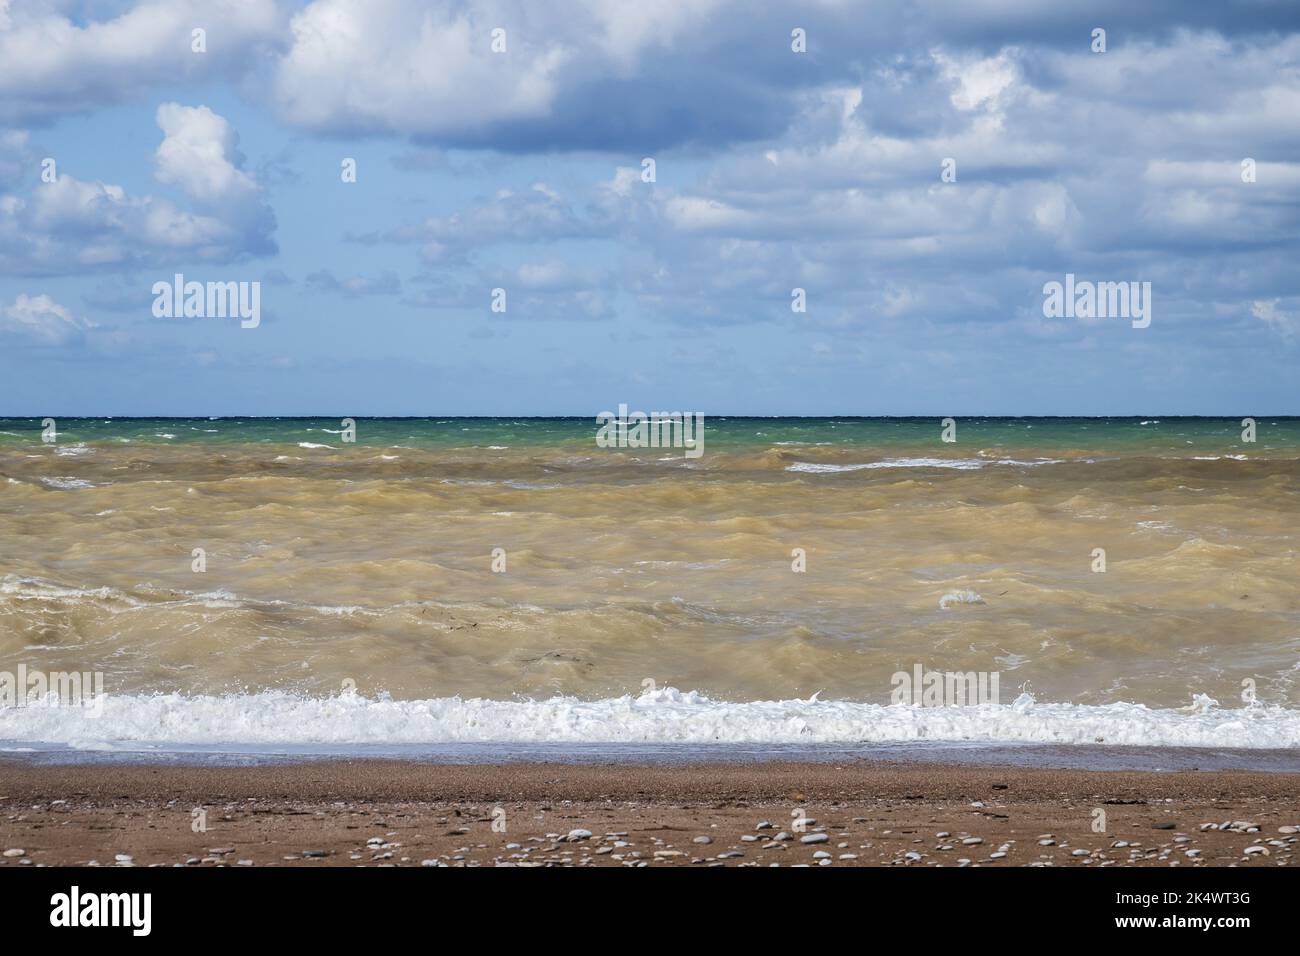 Paysage de plage vide avec eau de mer orageux, photo naturelle prise sur la côte de la mer Noire un jour ensoleillé, la Crimée Banque D'Images